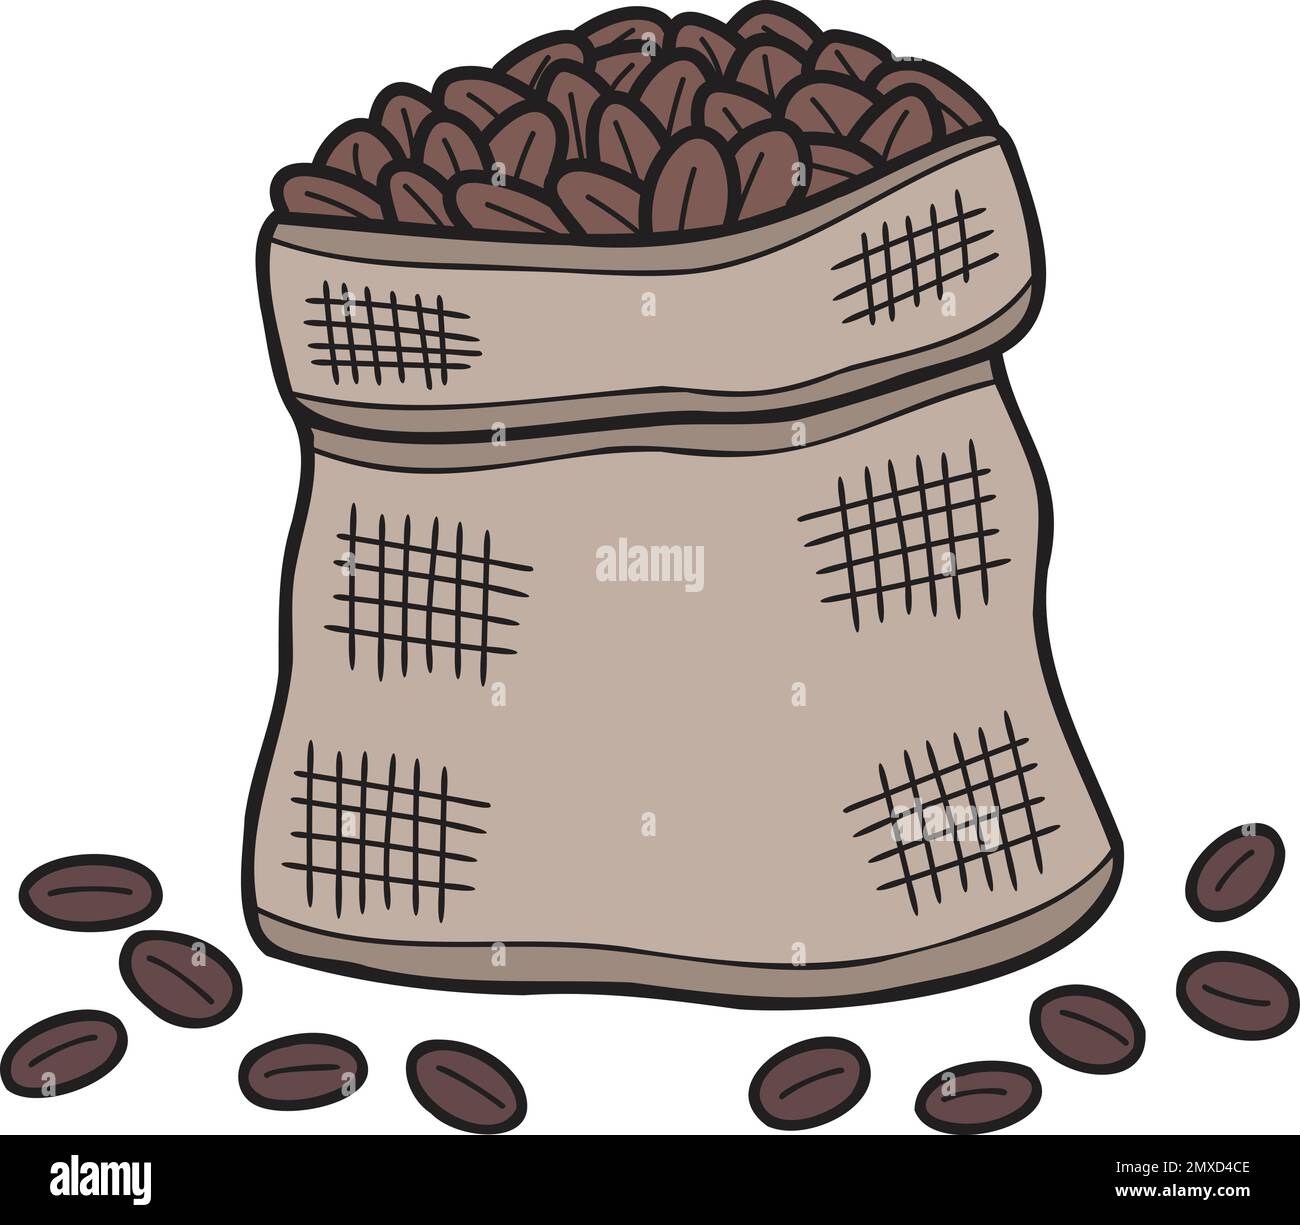 Handgezeichnete Kaffeebohnensack-Illustration im Kritzelstil, isoliert auf dem Hintergrund Stock Vektor